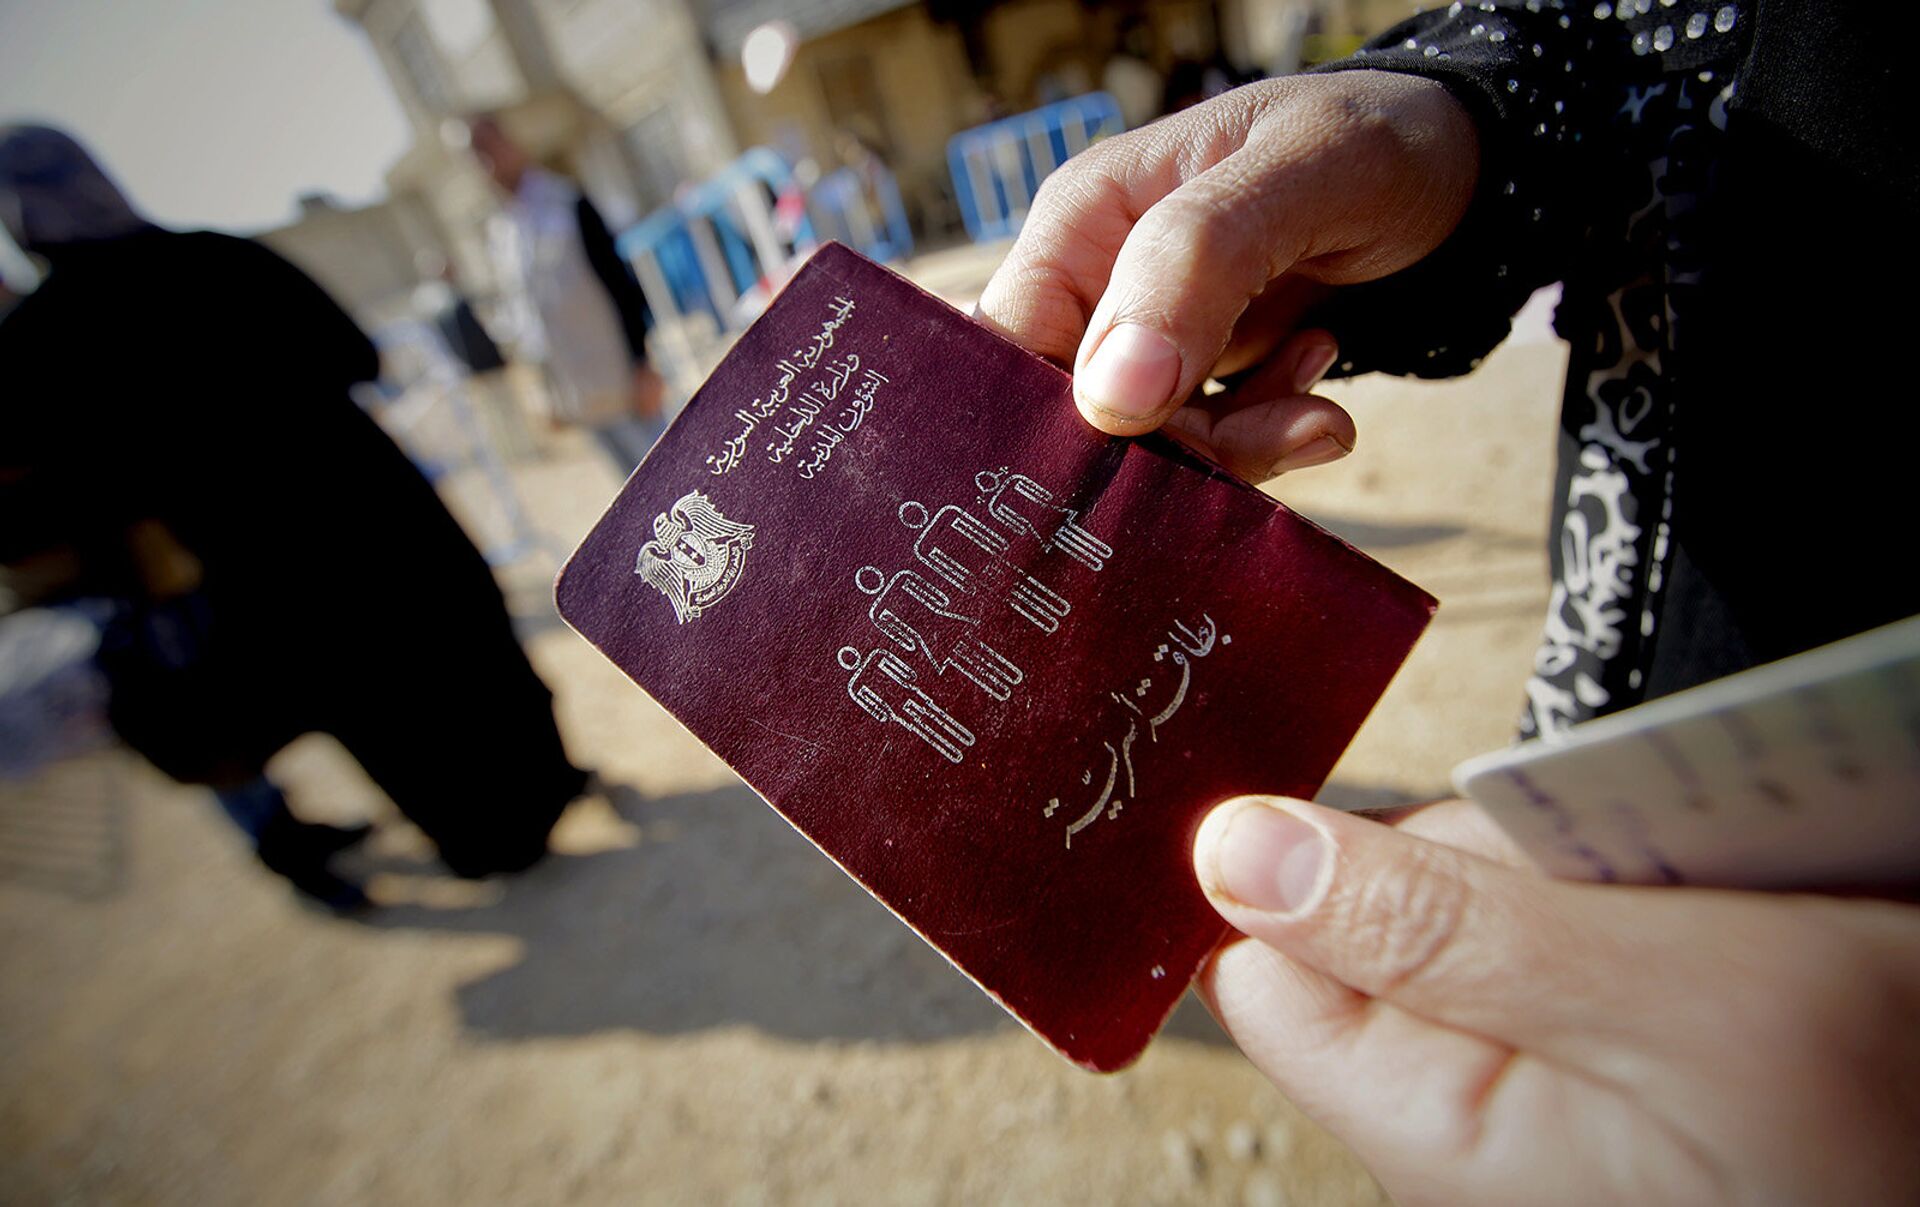 паспорт ирана